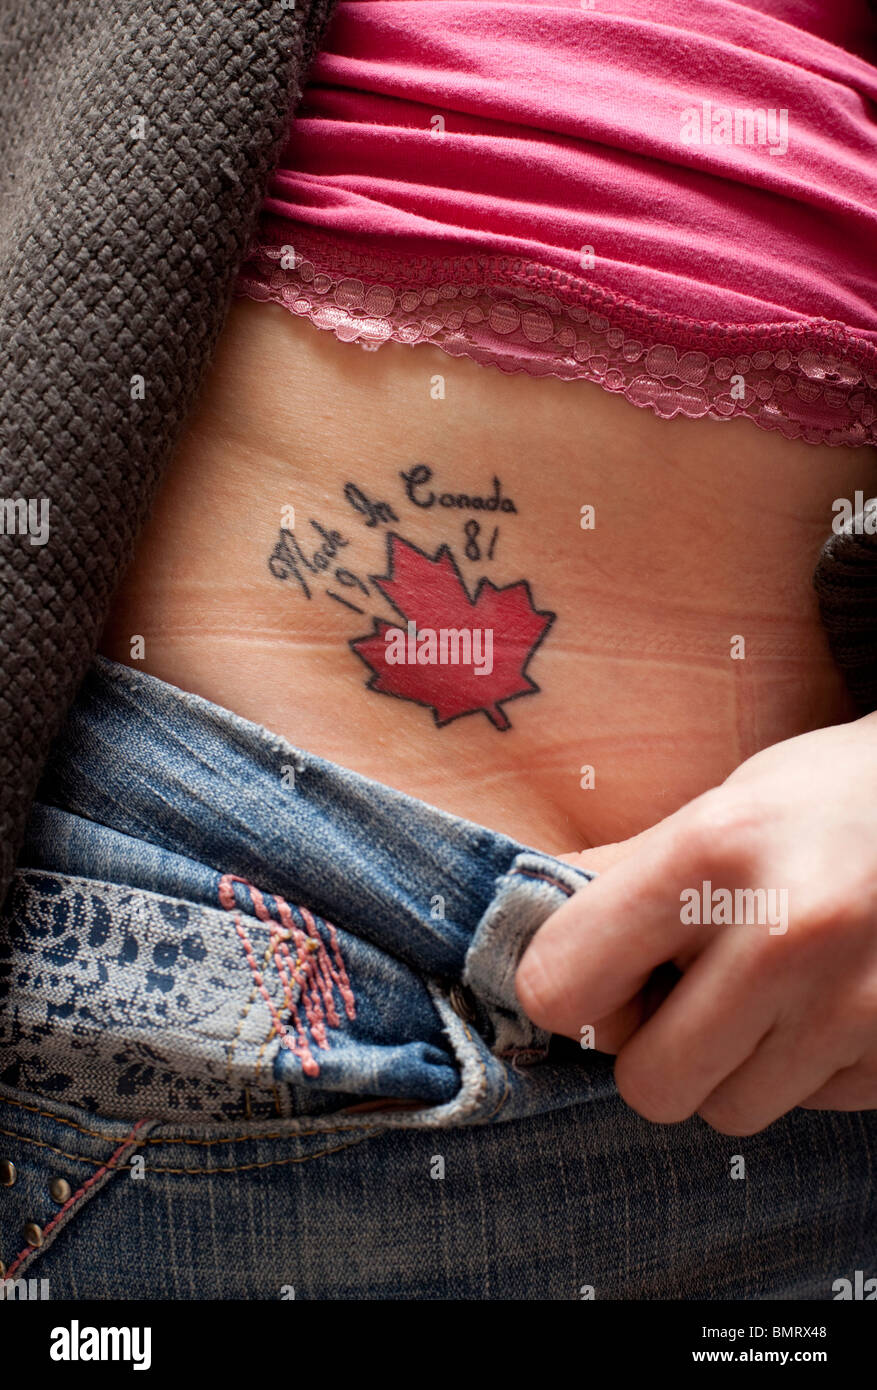 Un tatuaggio sexy nell'inguine di una donna Foto stock - Alamy